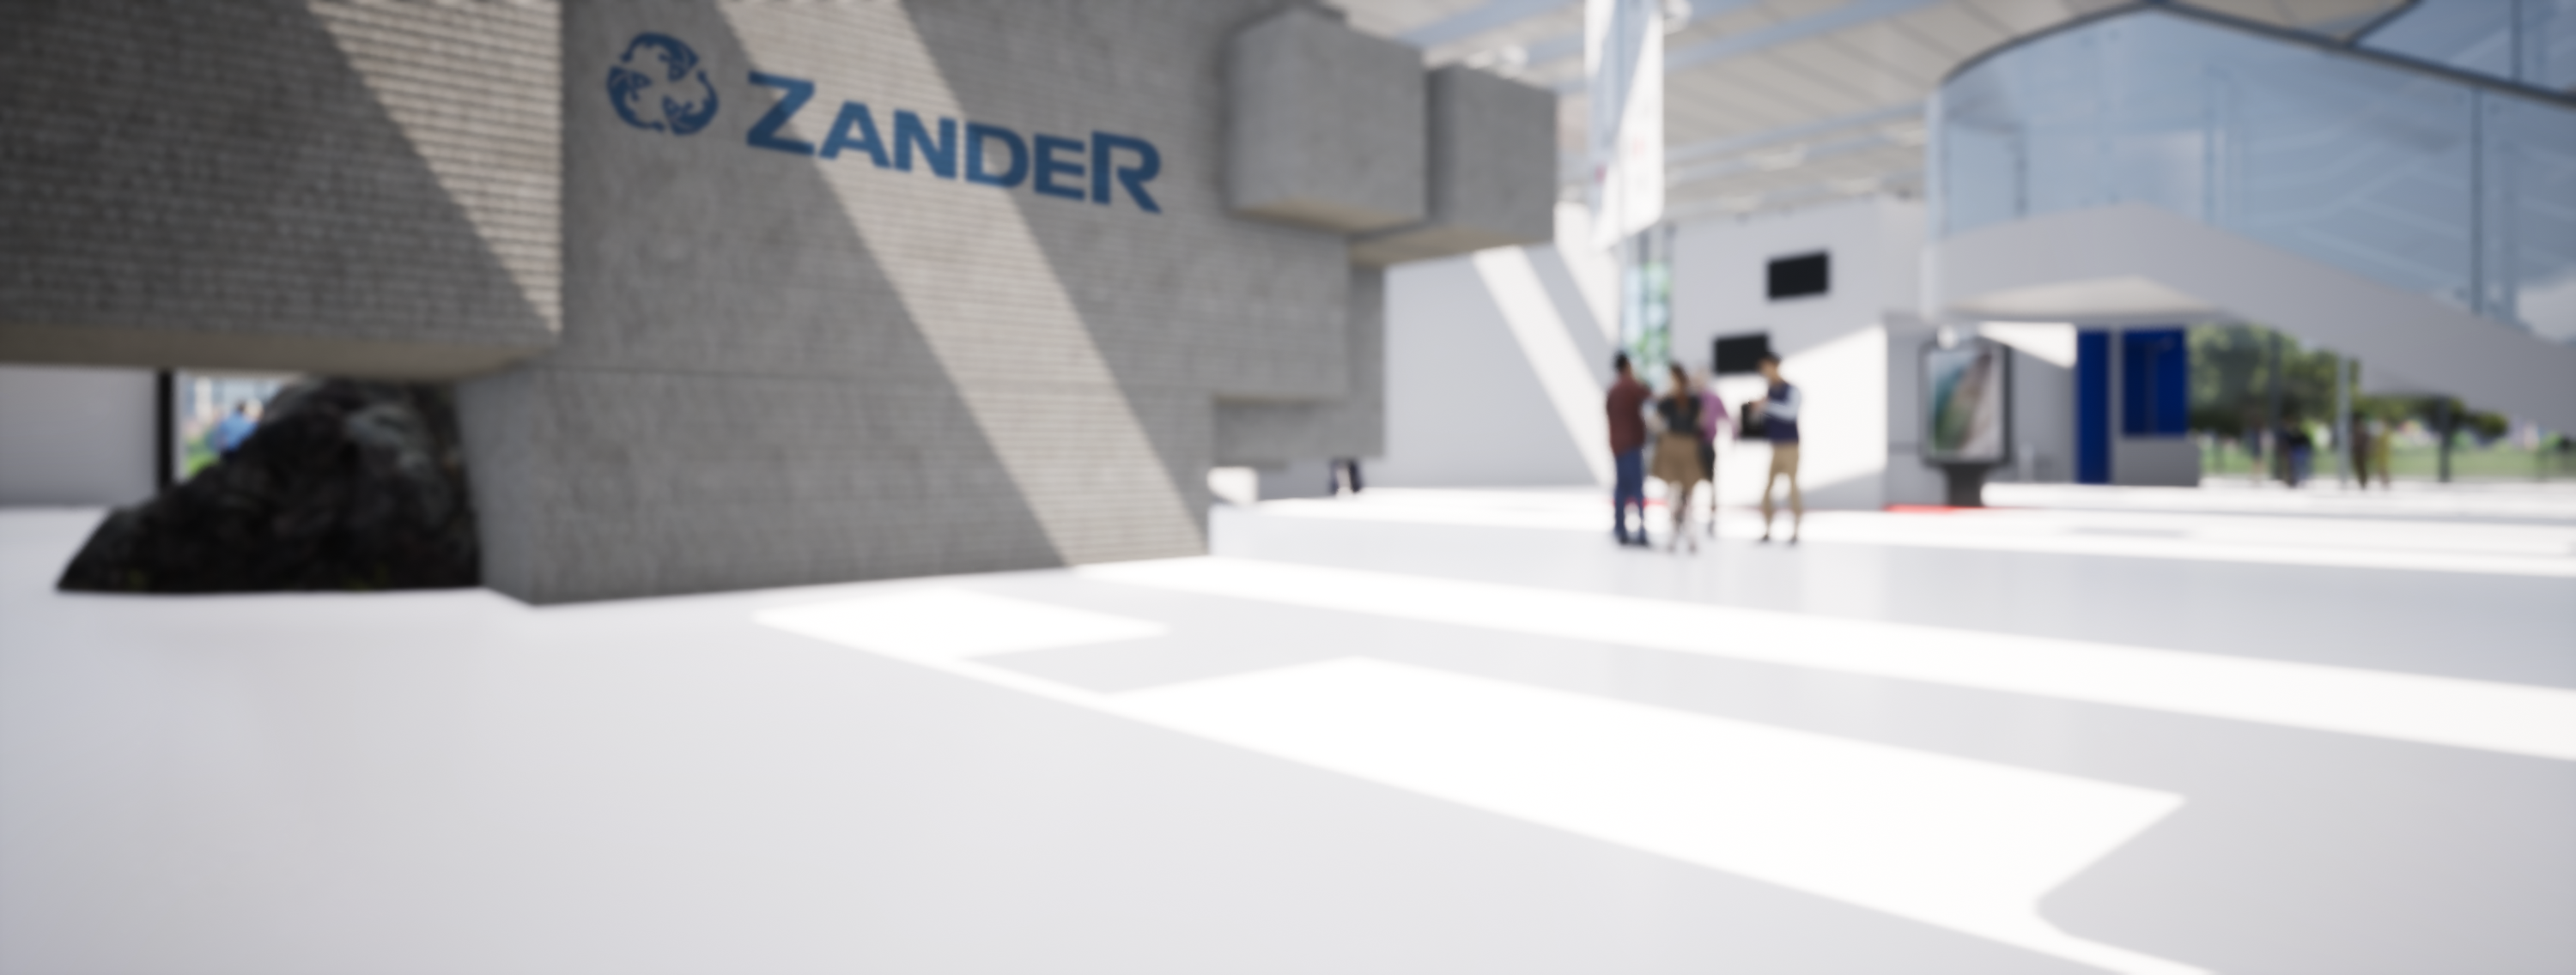 ZANDER partner meeting digital 2021